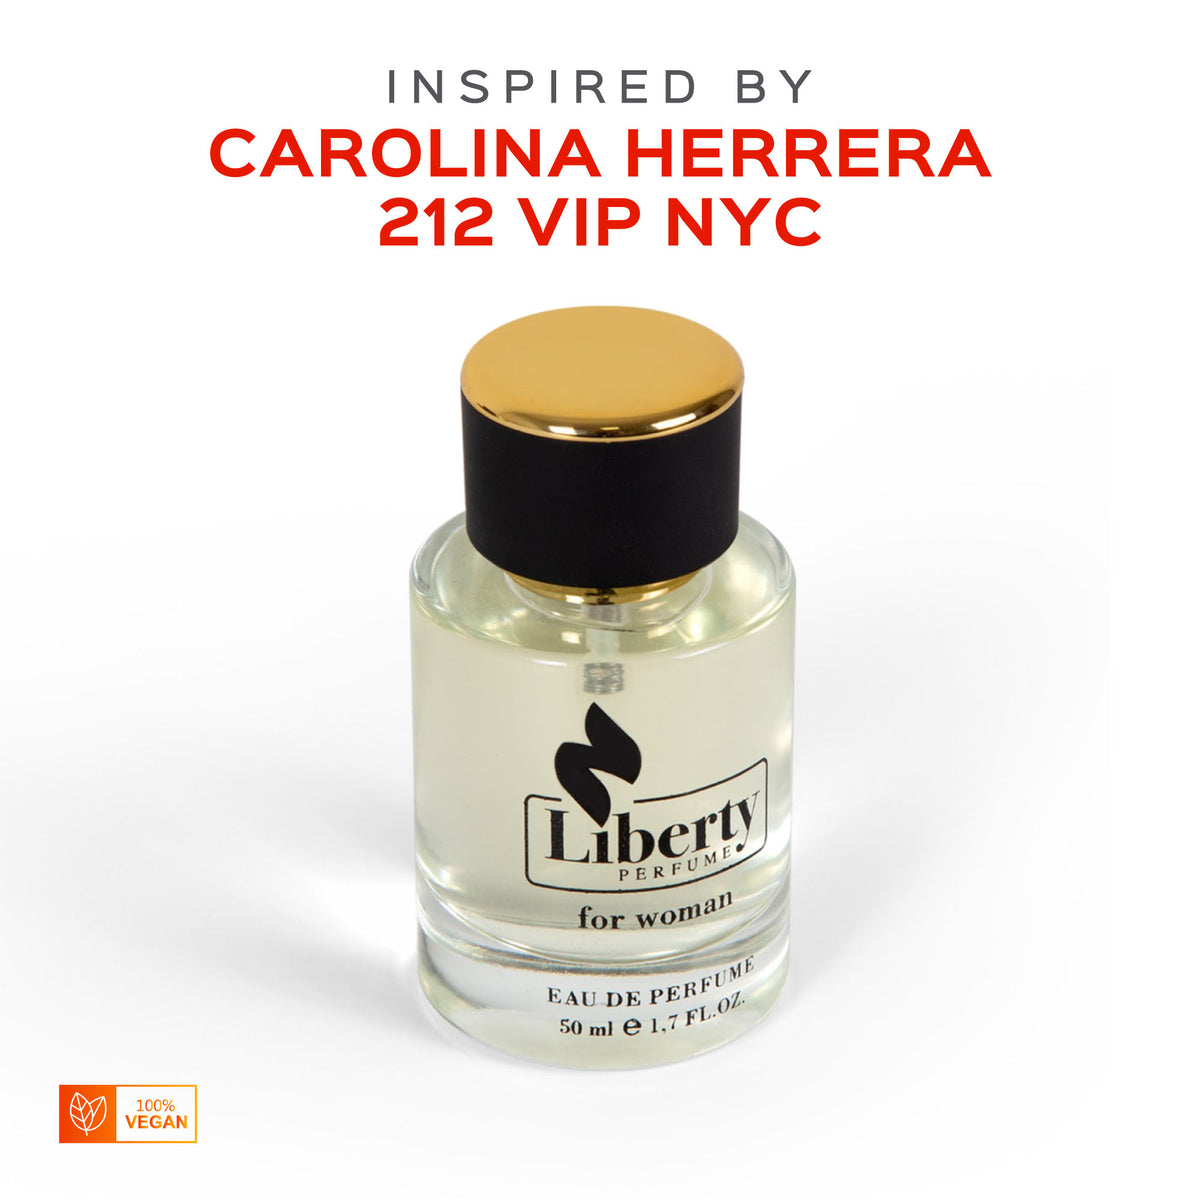 Perfume Herrera $39.99 Vip for Carolina by 212 - Women Inspired W18 – Liberty